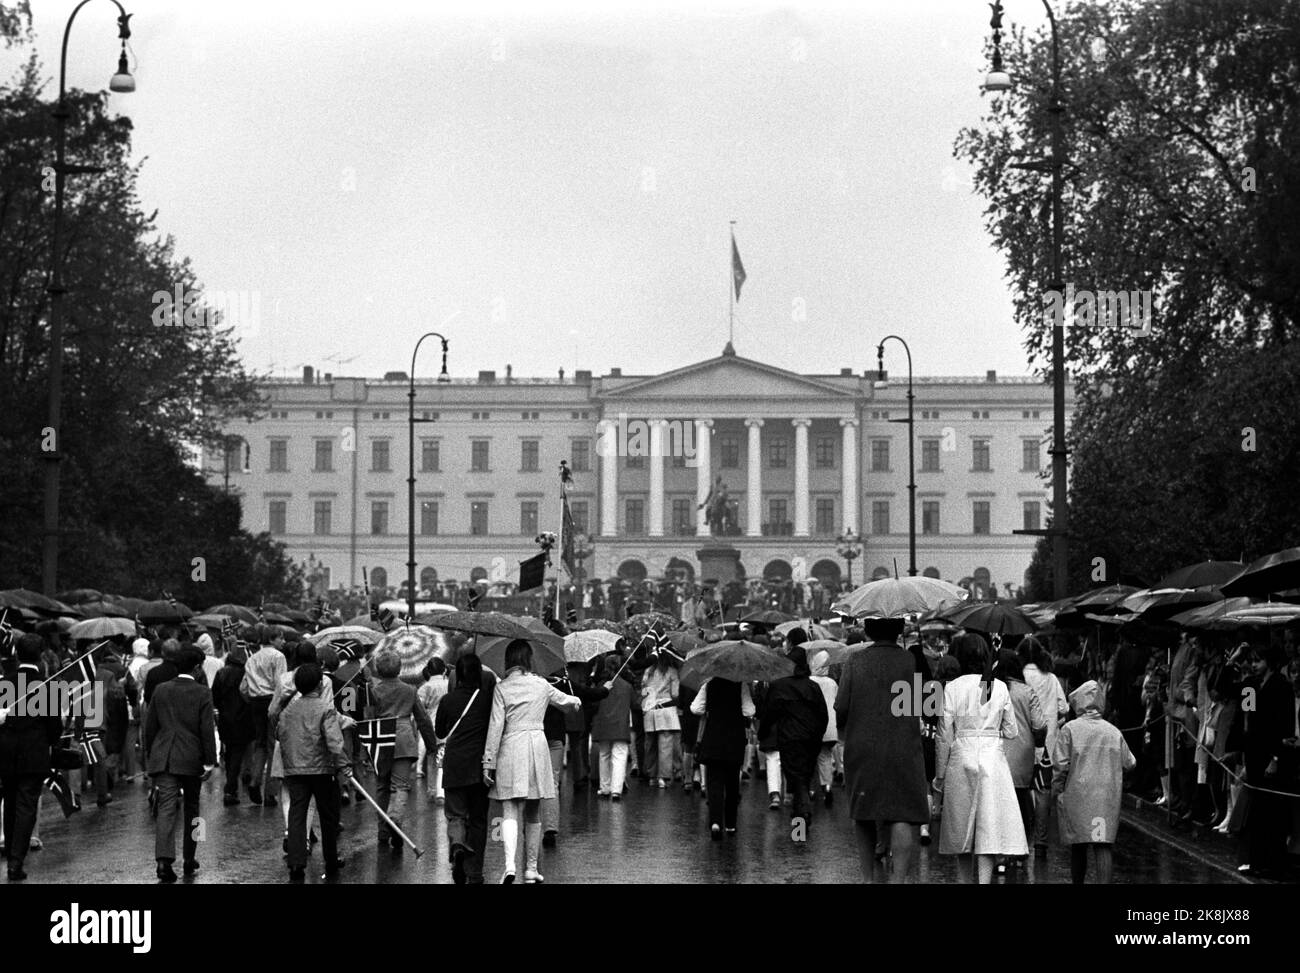 Oslo 19710517. Mai 17 in Oslo. Ein wenig Regen dämpfte die Stimmung nicht. Hier 17. Der Ami-Zug auf dem Weg zum Schloss. Viele Schirme im Zug. Fuß: NTB / NTB Stockfoto